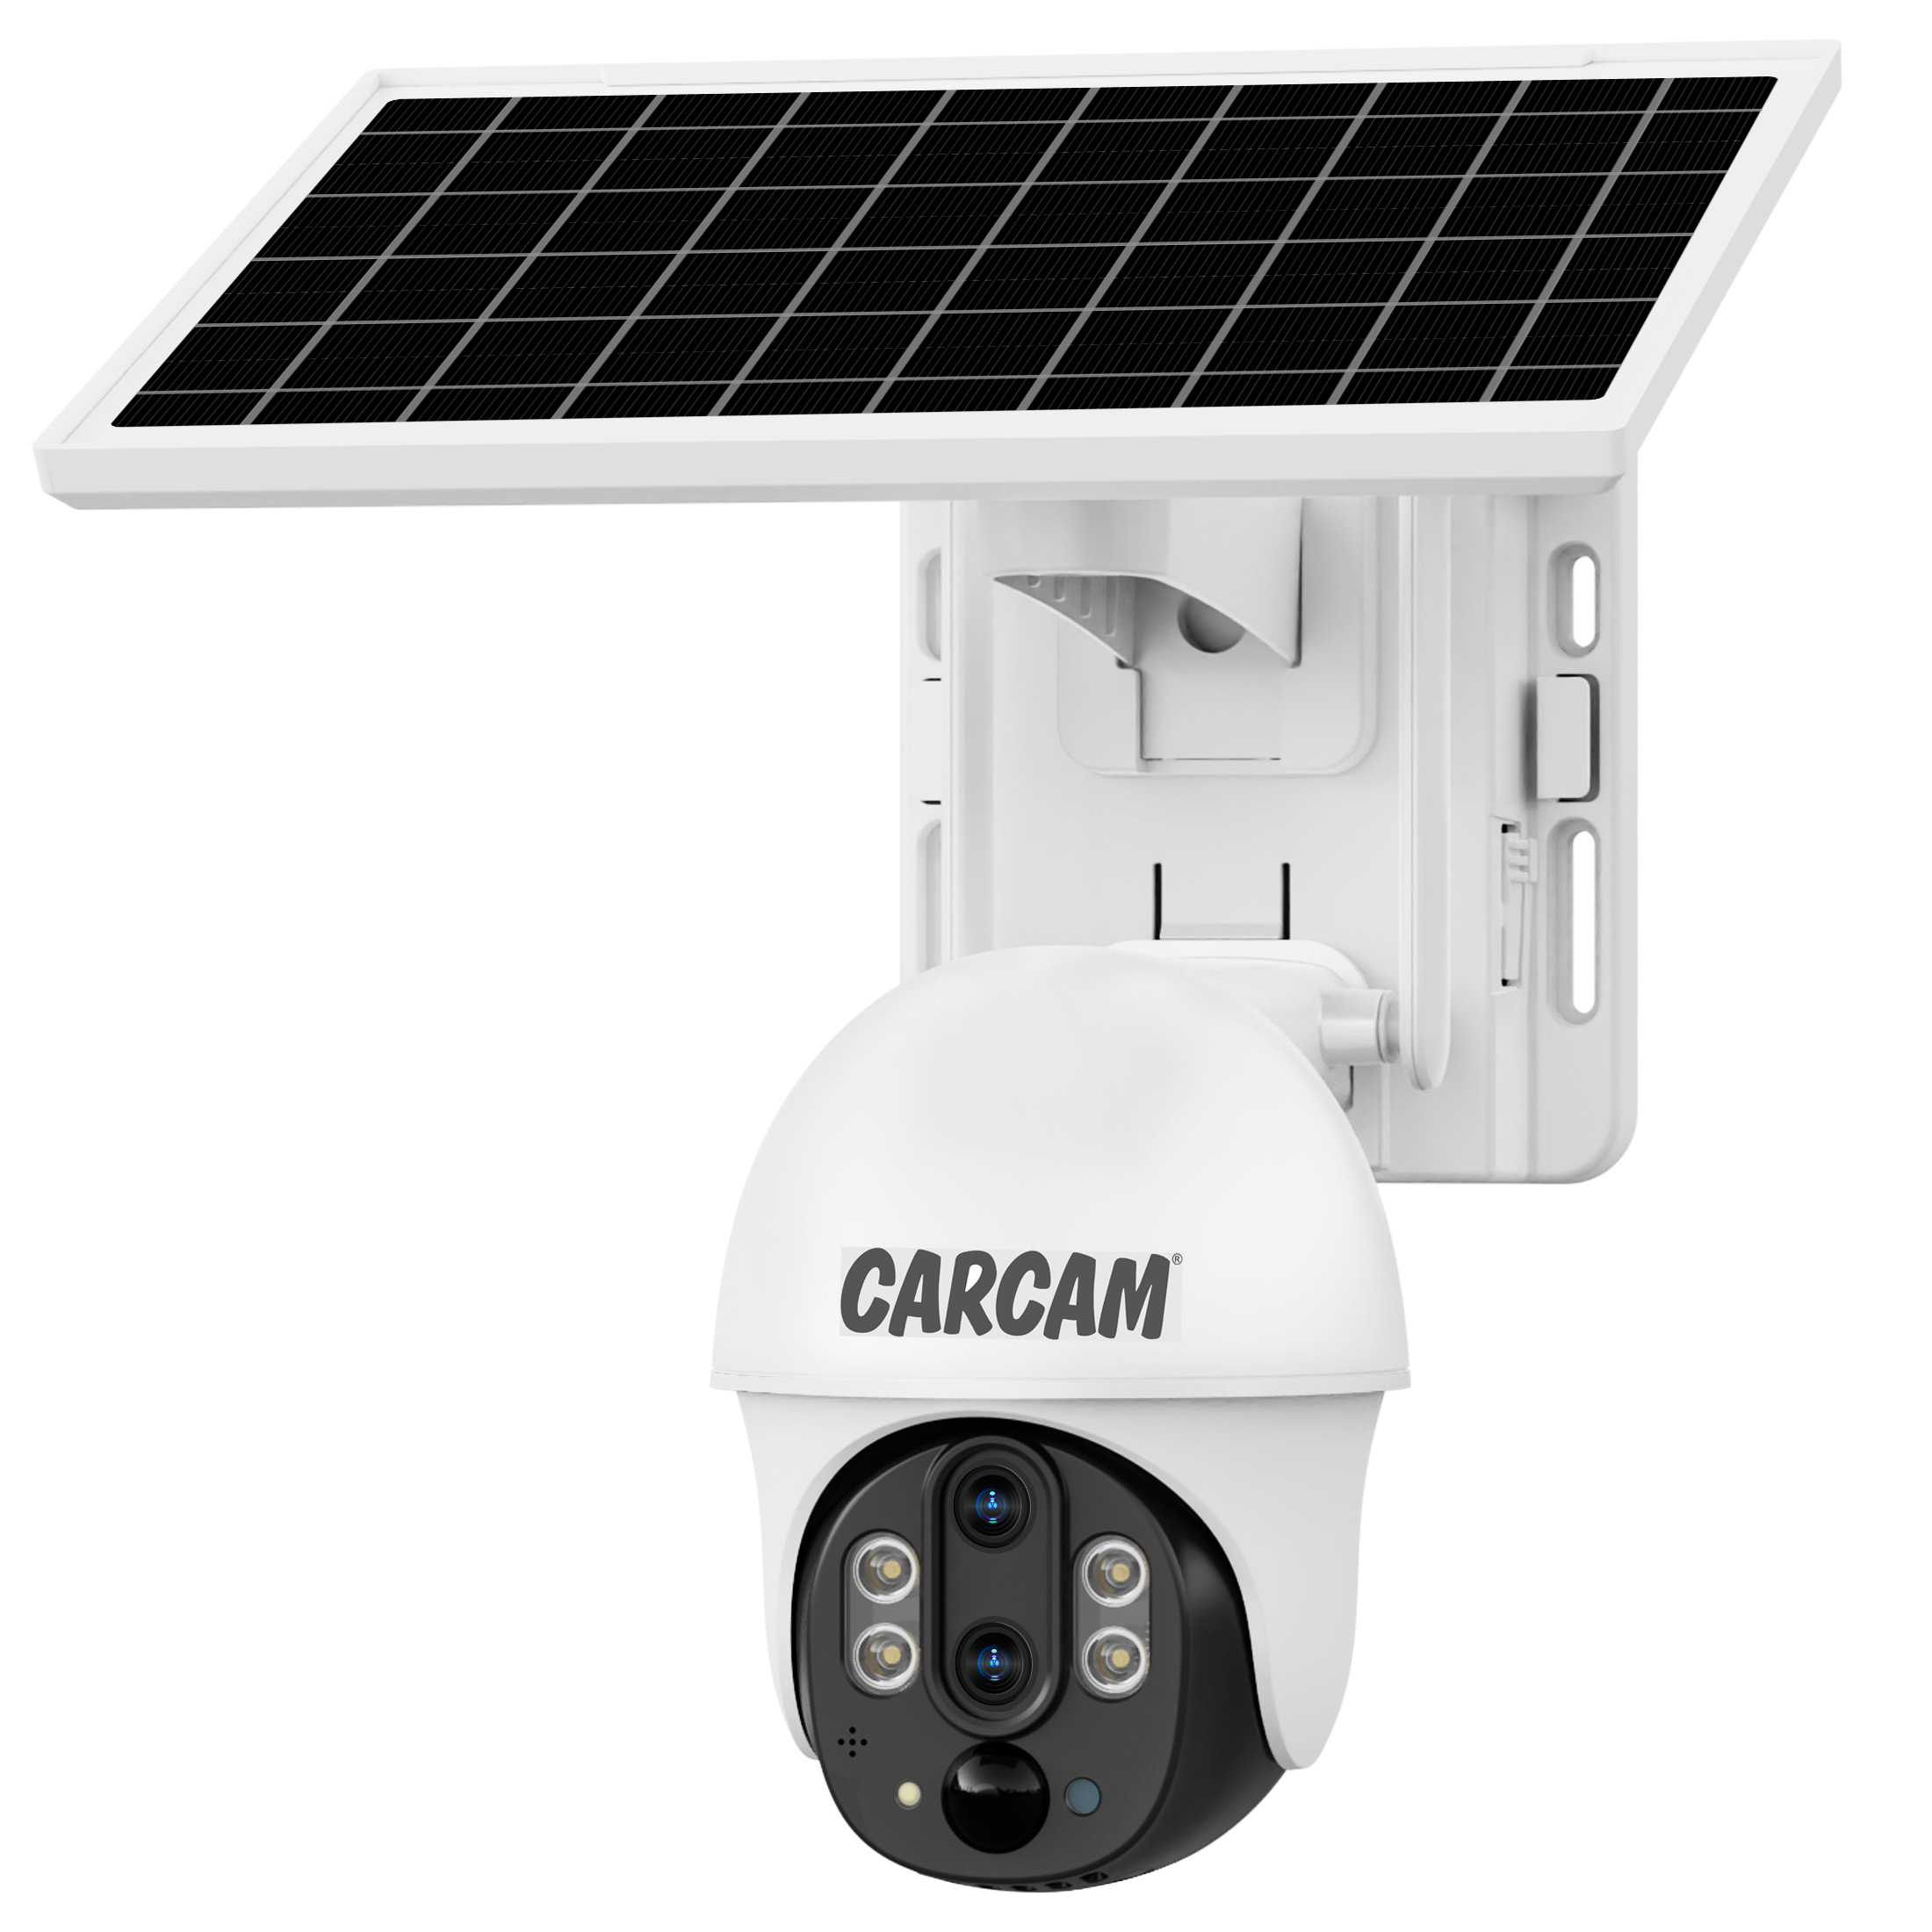 Поворотная 4G-камера с двумя объективами, солнечной батареей и 10-кратным гибридным зумом CARCAM 3MP Solar Outdoor PTZ 10xZoom Dual Lens Camera V380P9DL-4G поворотная 4g камера с двумя объективами солнечной батареей и 10 кратным гибридным зумом carcam 3mp solar outdoor ptz 10xzoom dual lens camera v380p9dl 4g